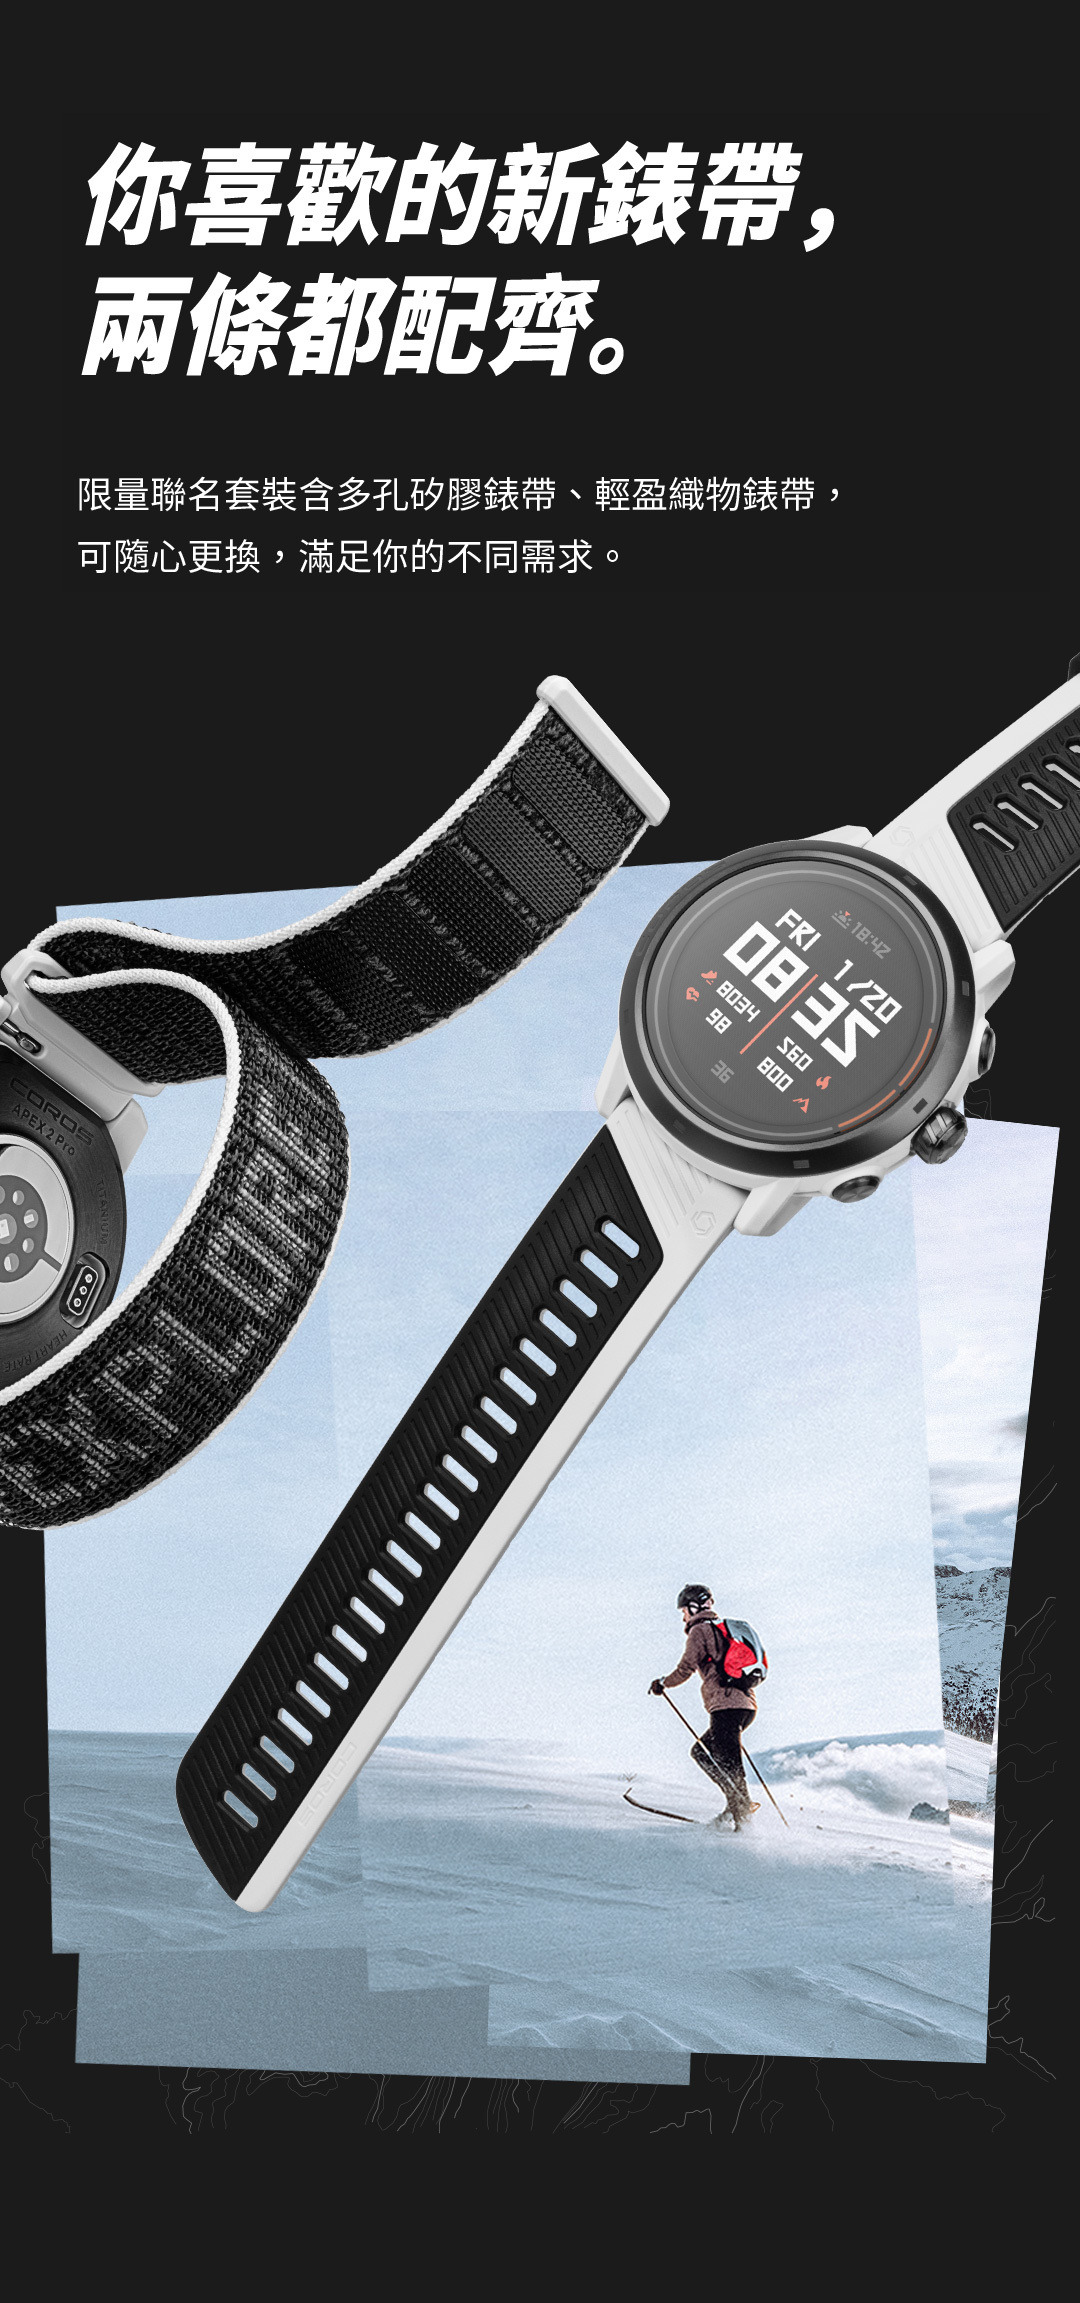 你喜歡的新錶帶， 兩條都配齊。限量聯名套裝含多孔矽膠錶帶、輕盈織物錶帶， 可隨心更換，滿足你的不同需求。